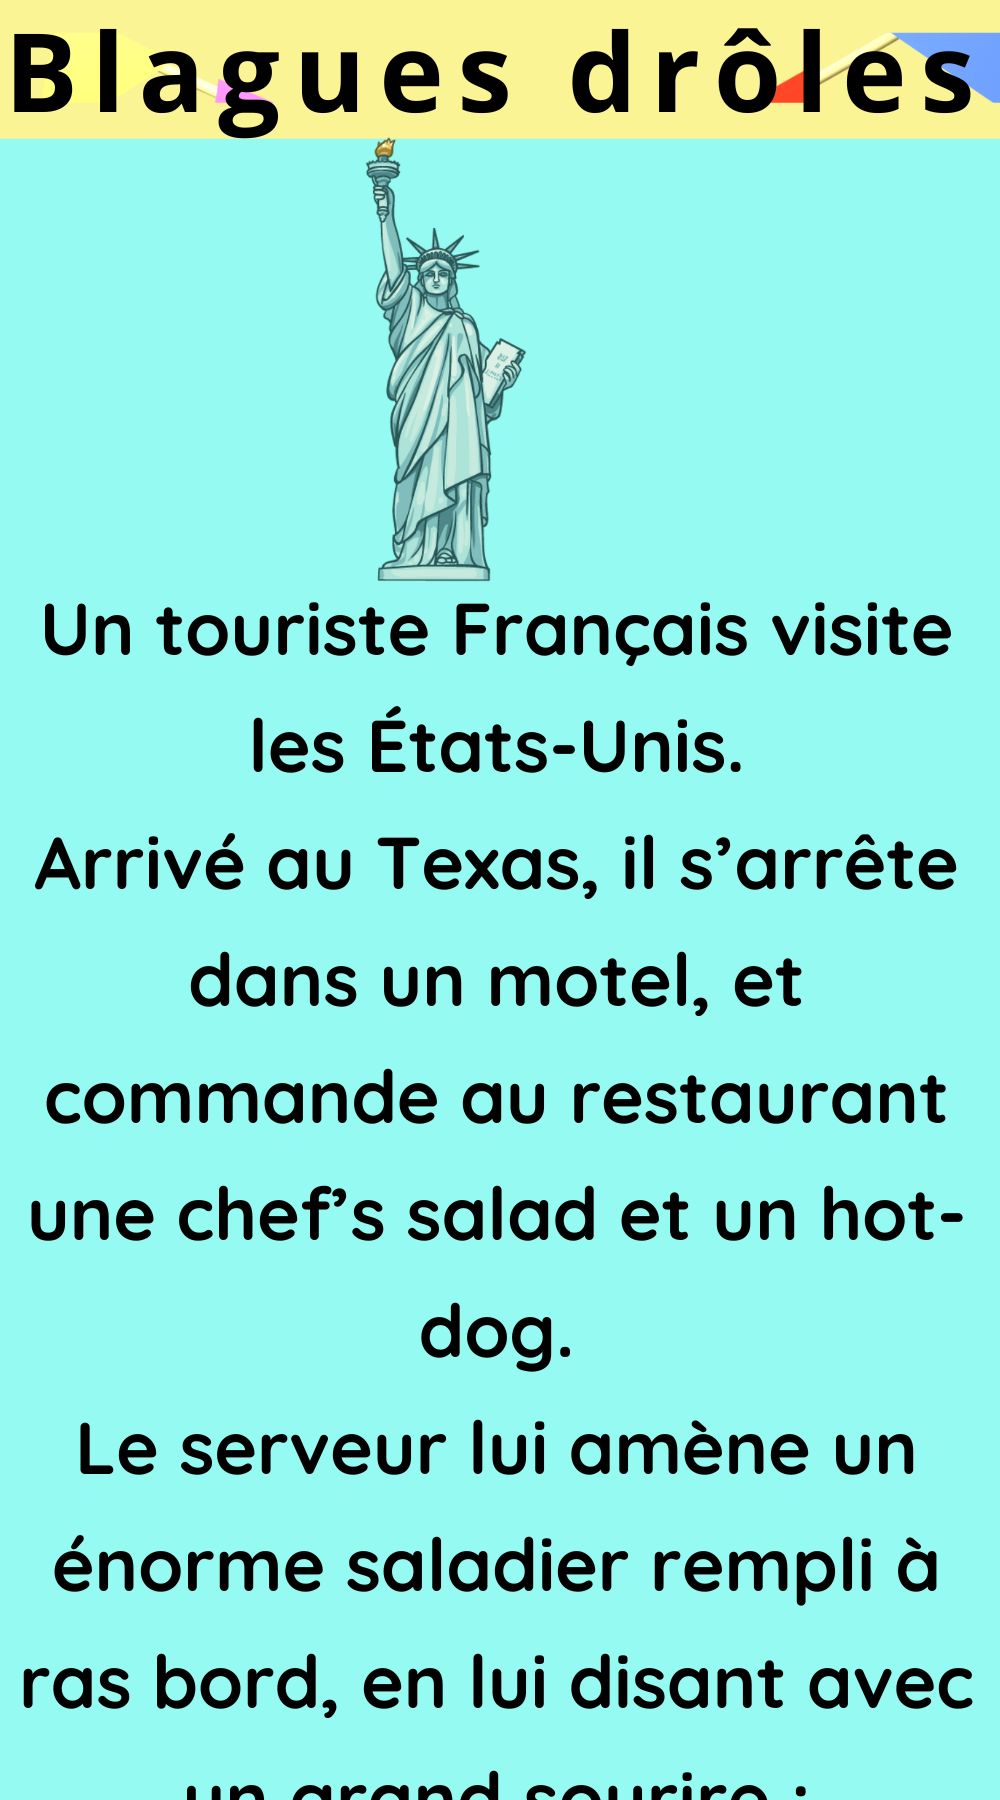 Un touriste Français visite les États-Unis